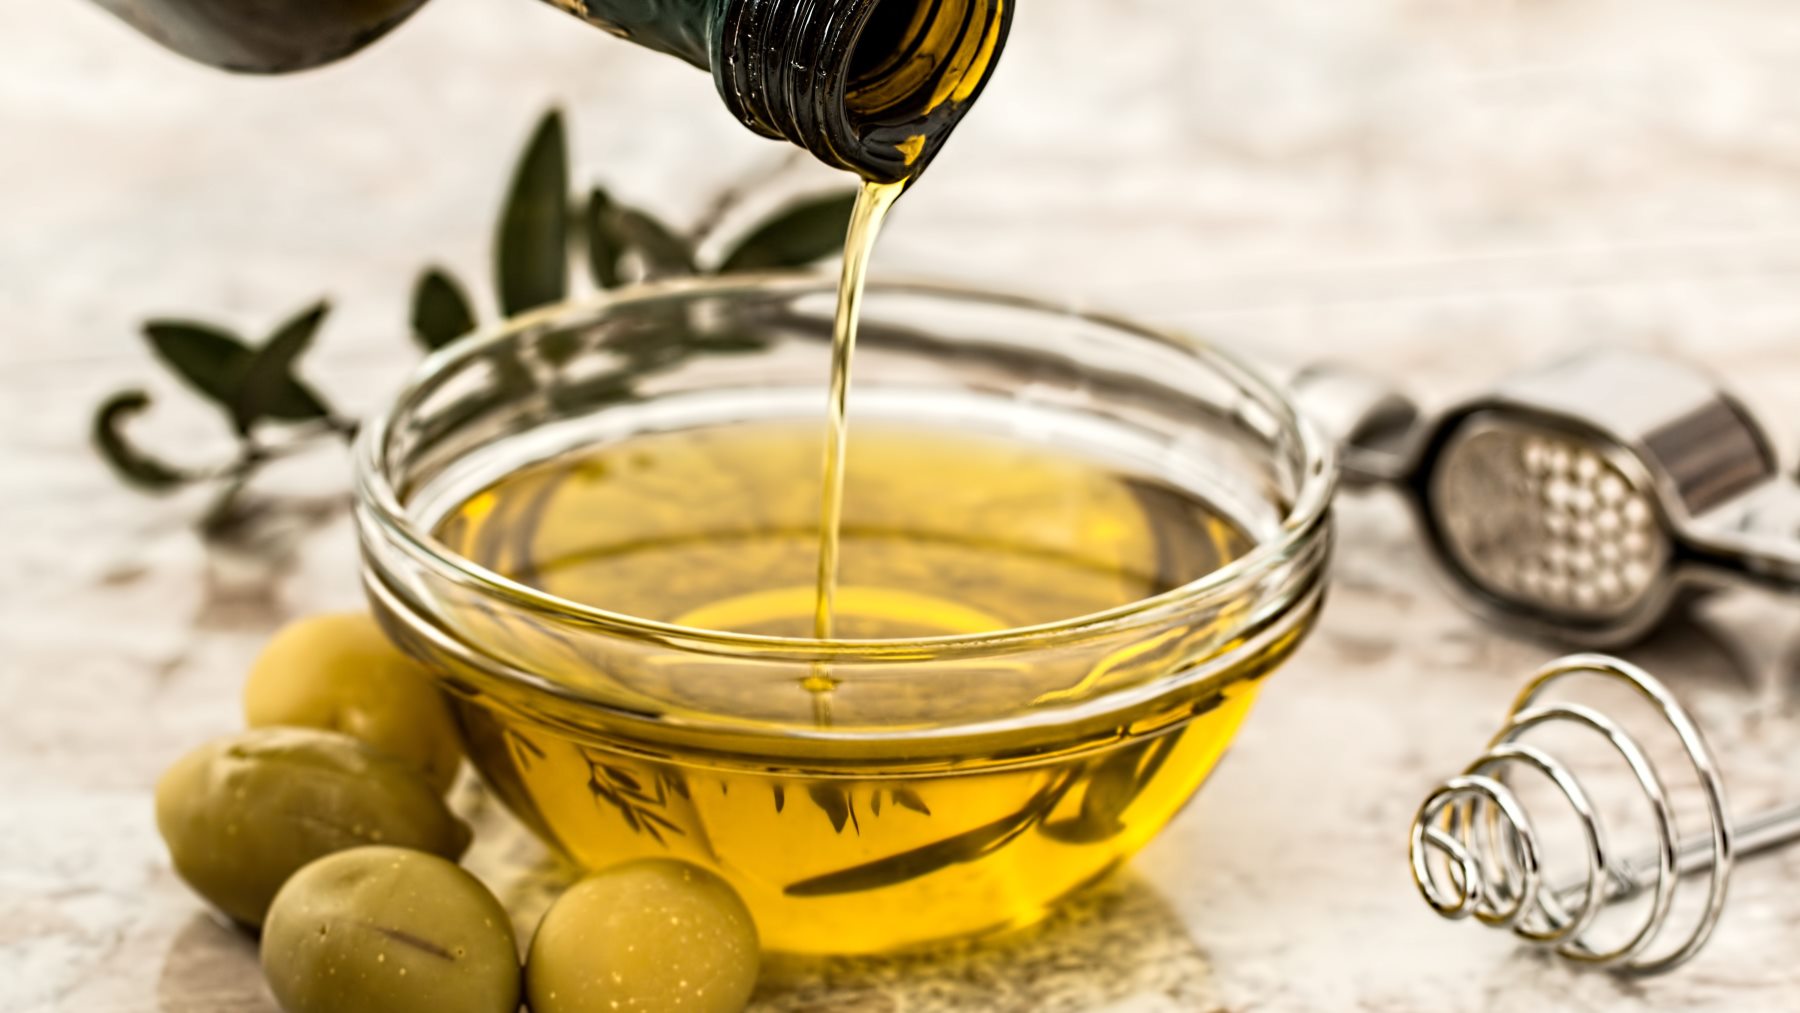 Las veces exactas que puedes reutilizar el aceite de oliva según la ciencia